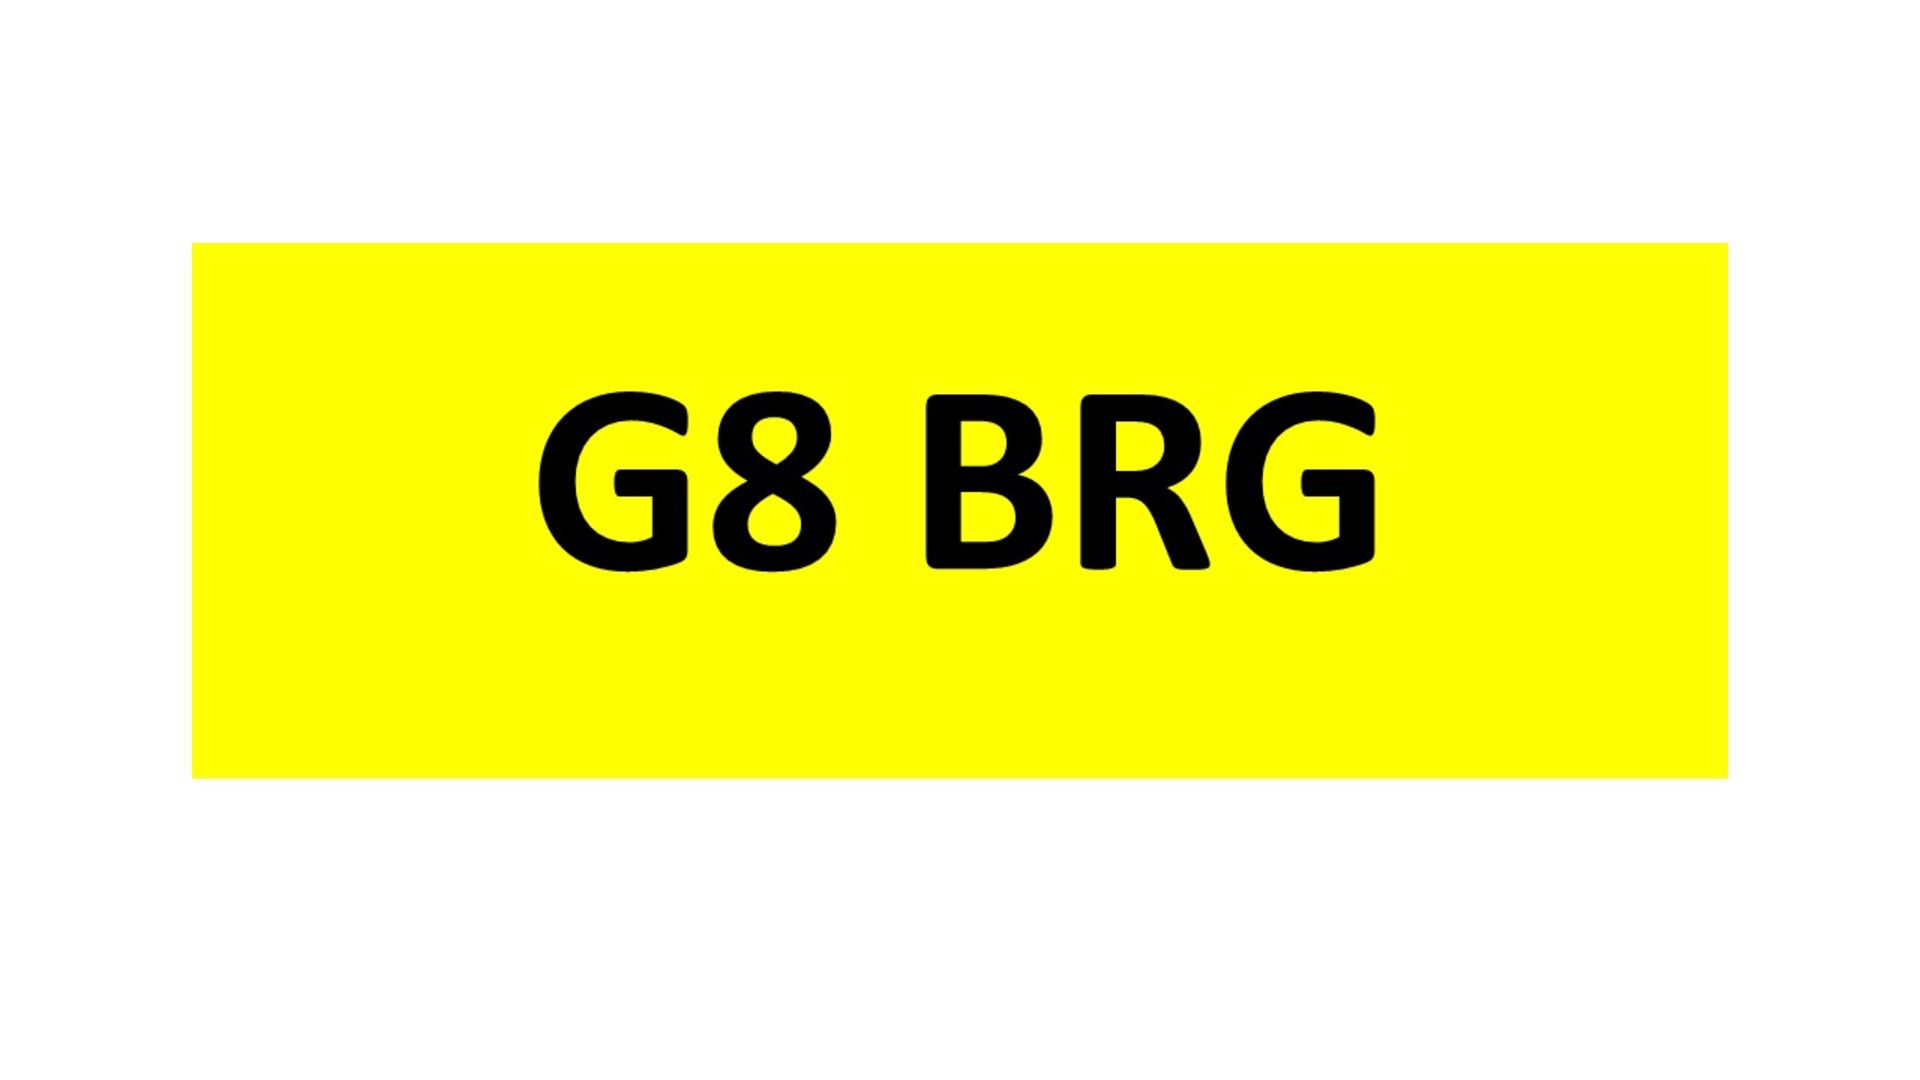 Registration - G8 BRG